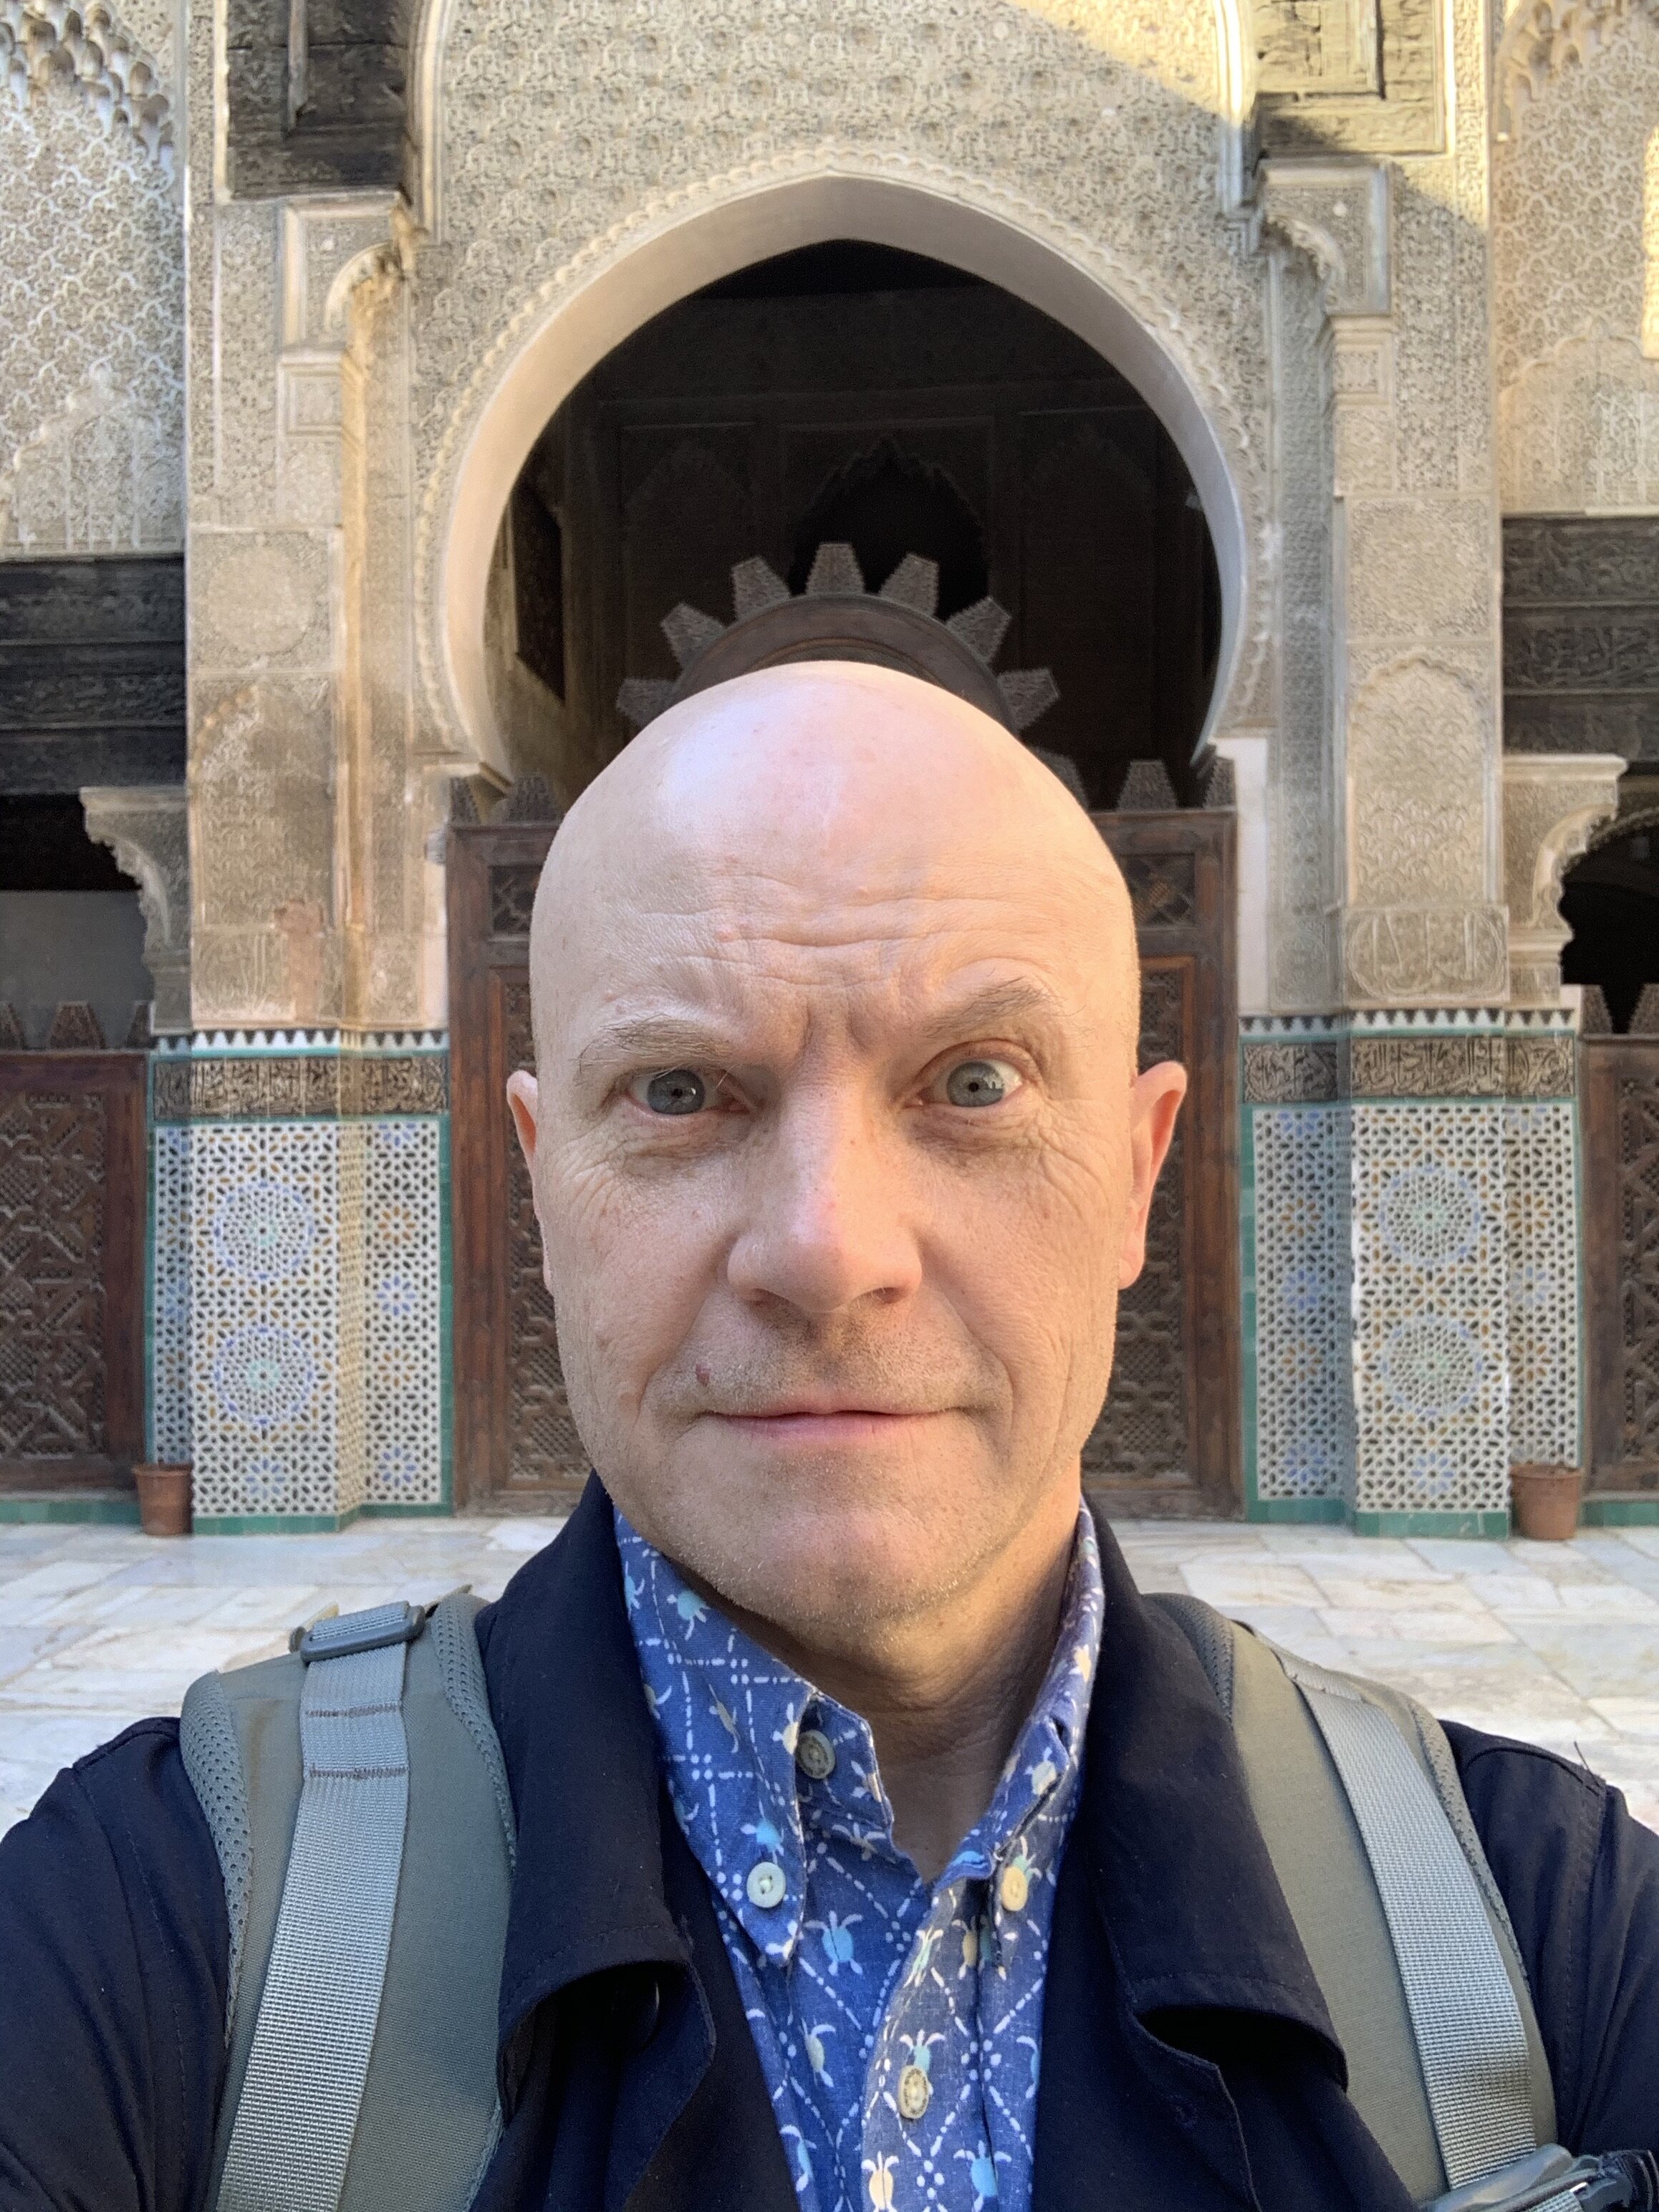 Mosque selfie.jpg